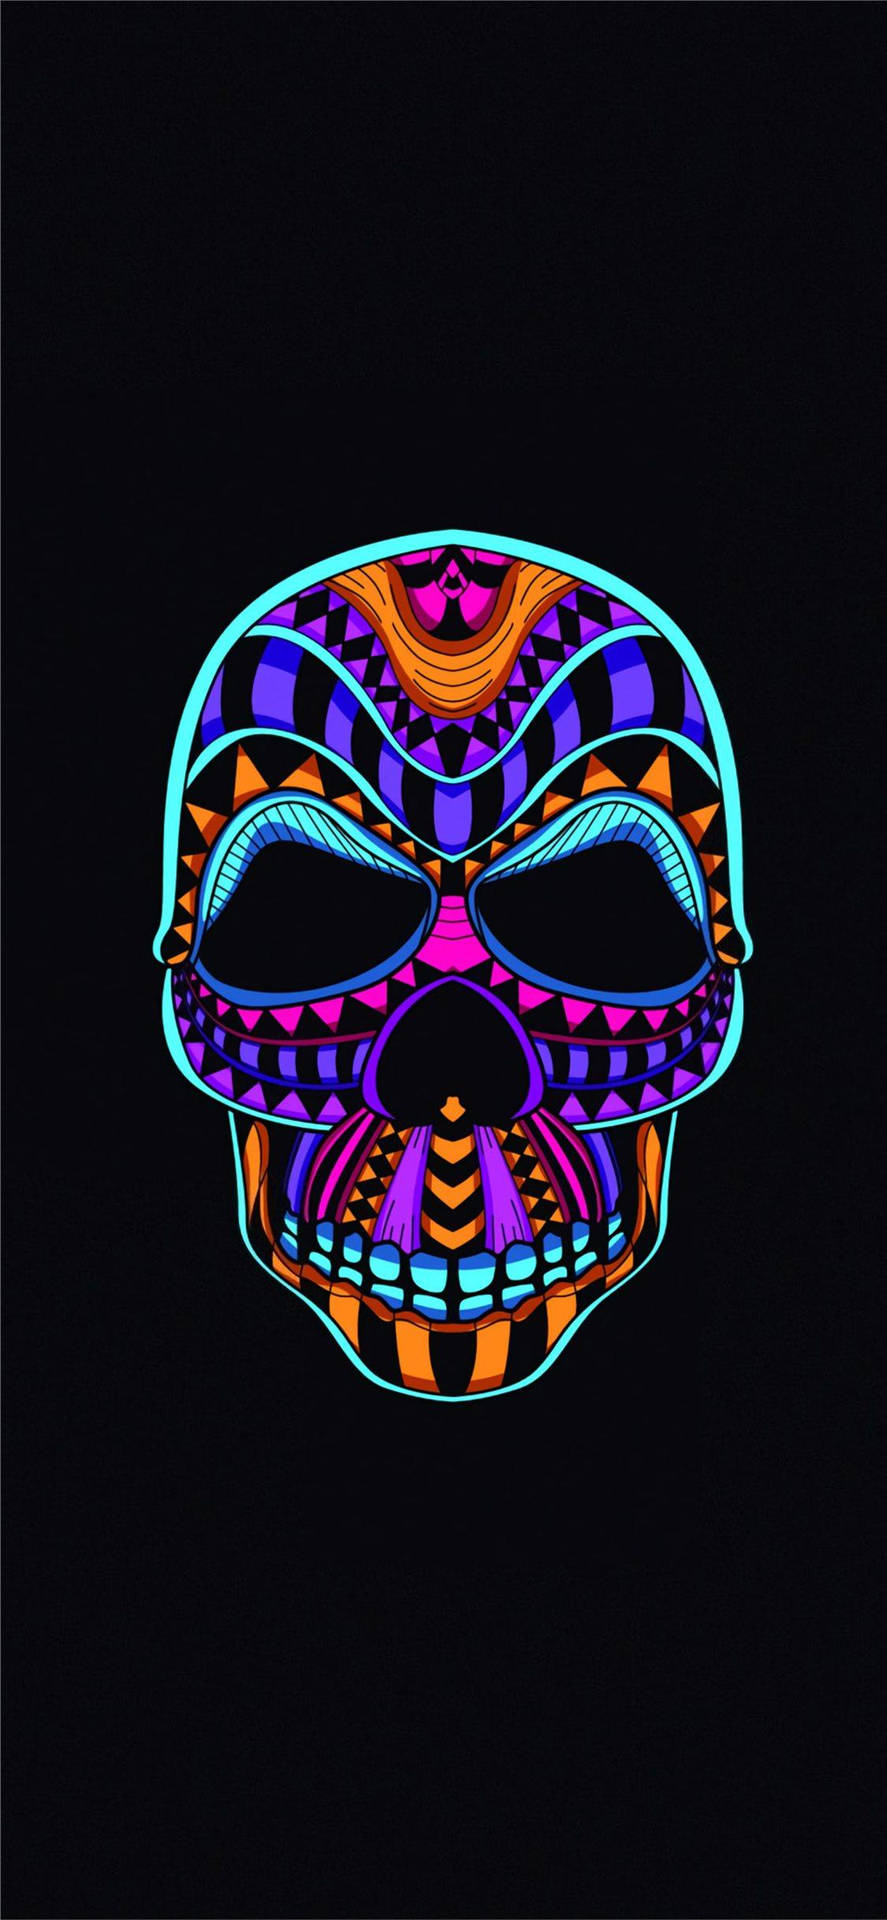 Vibrant Neon Skull On Oled Display